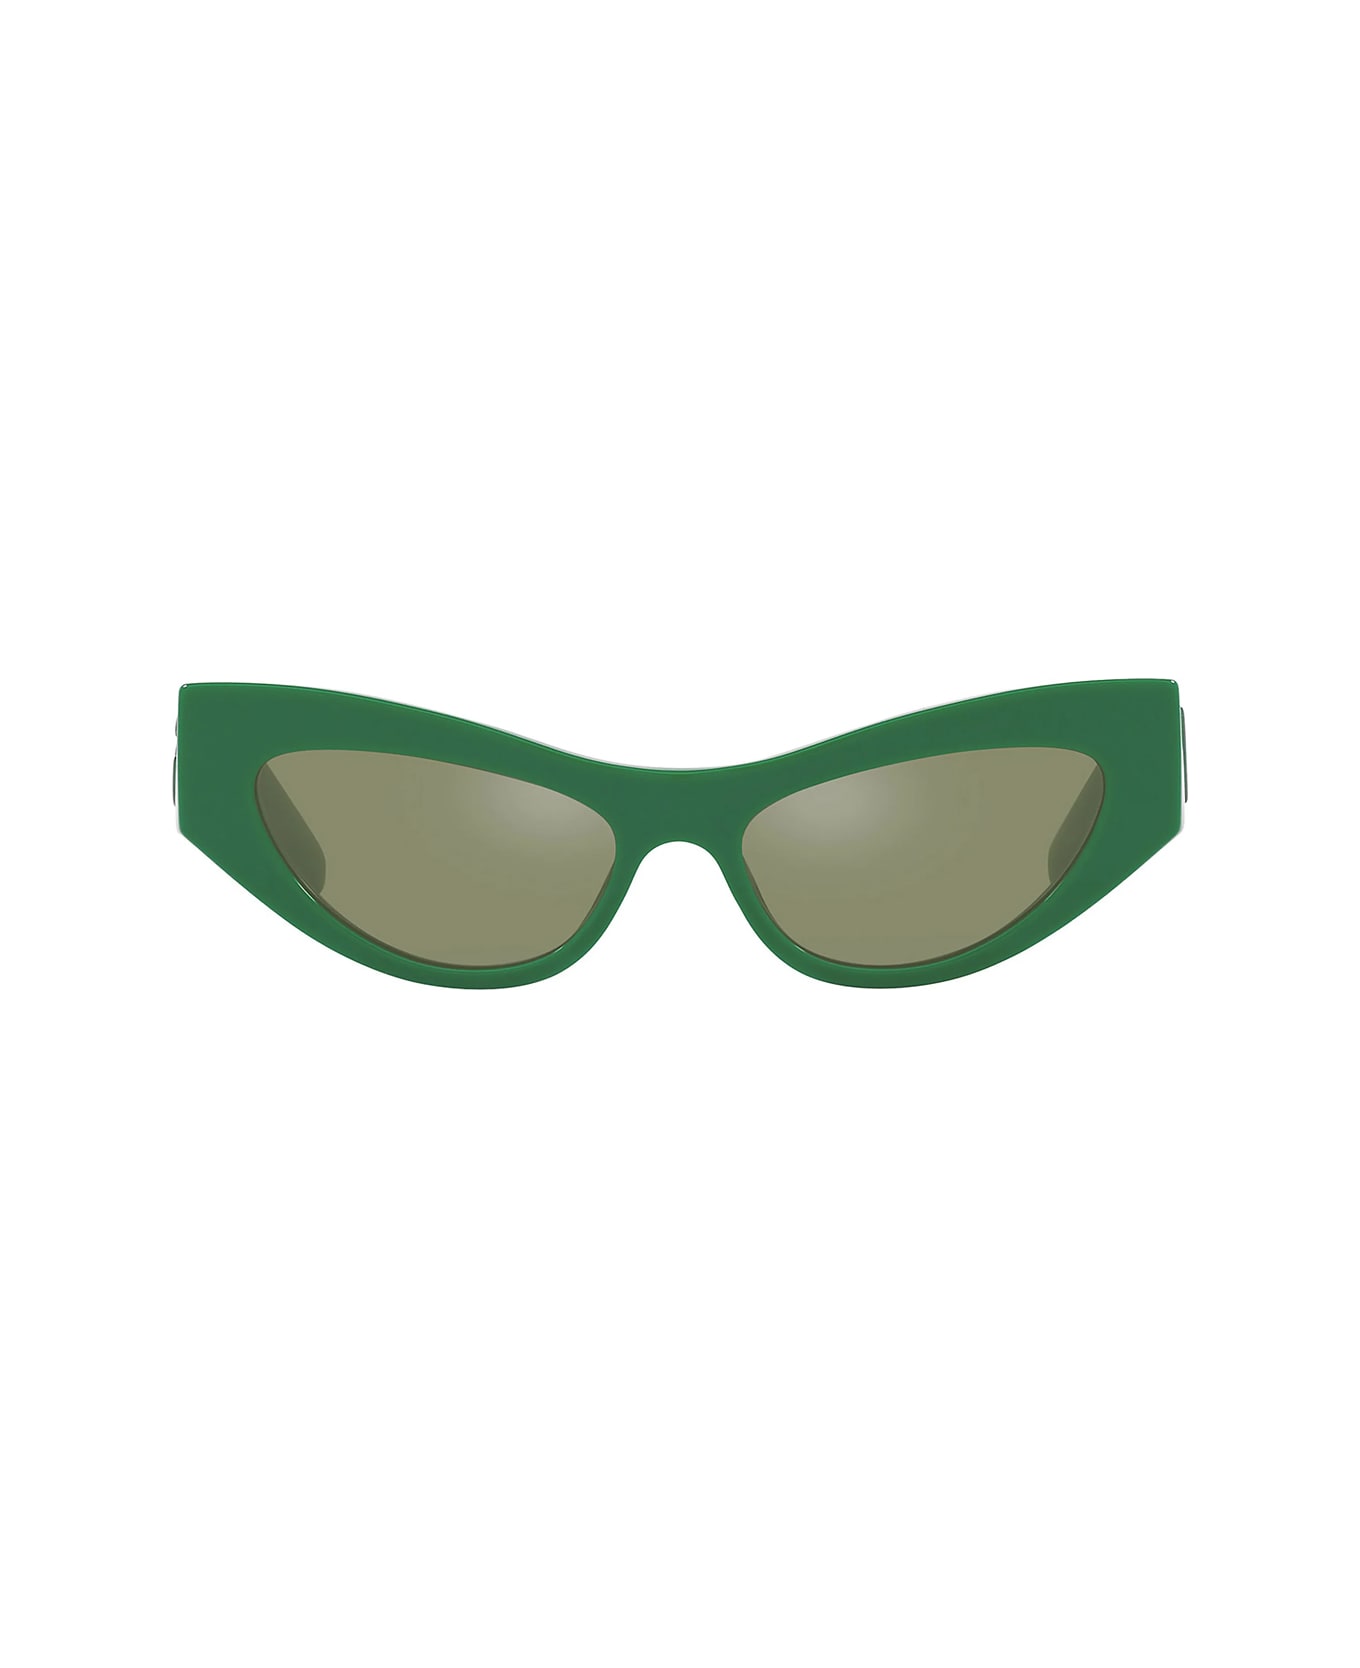 Dolce & Gabbana Eyewear Dg4450 331152 Sunglasses - Verde